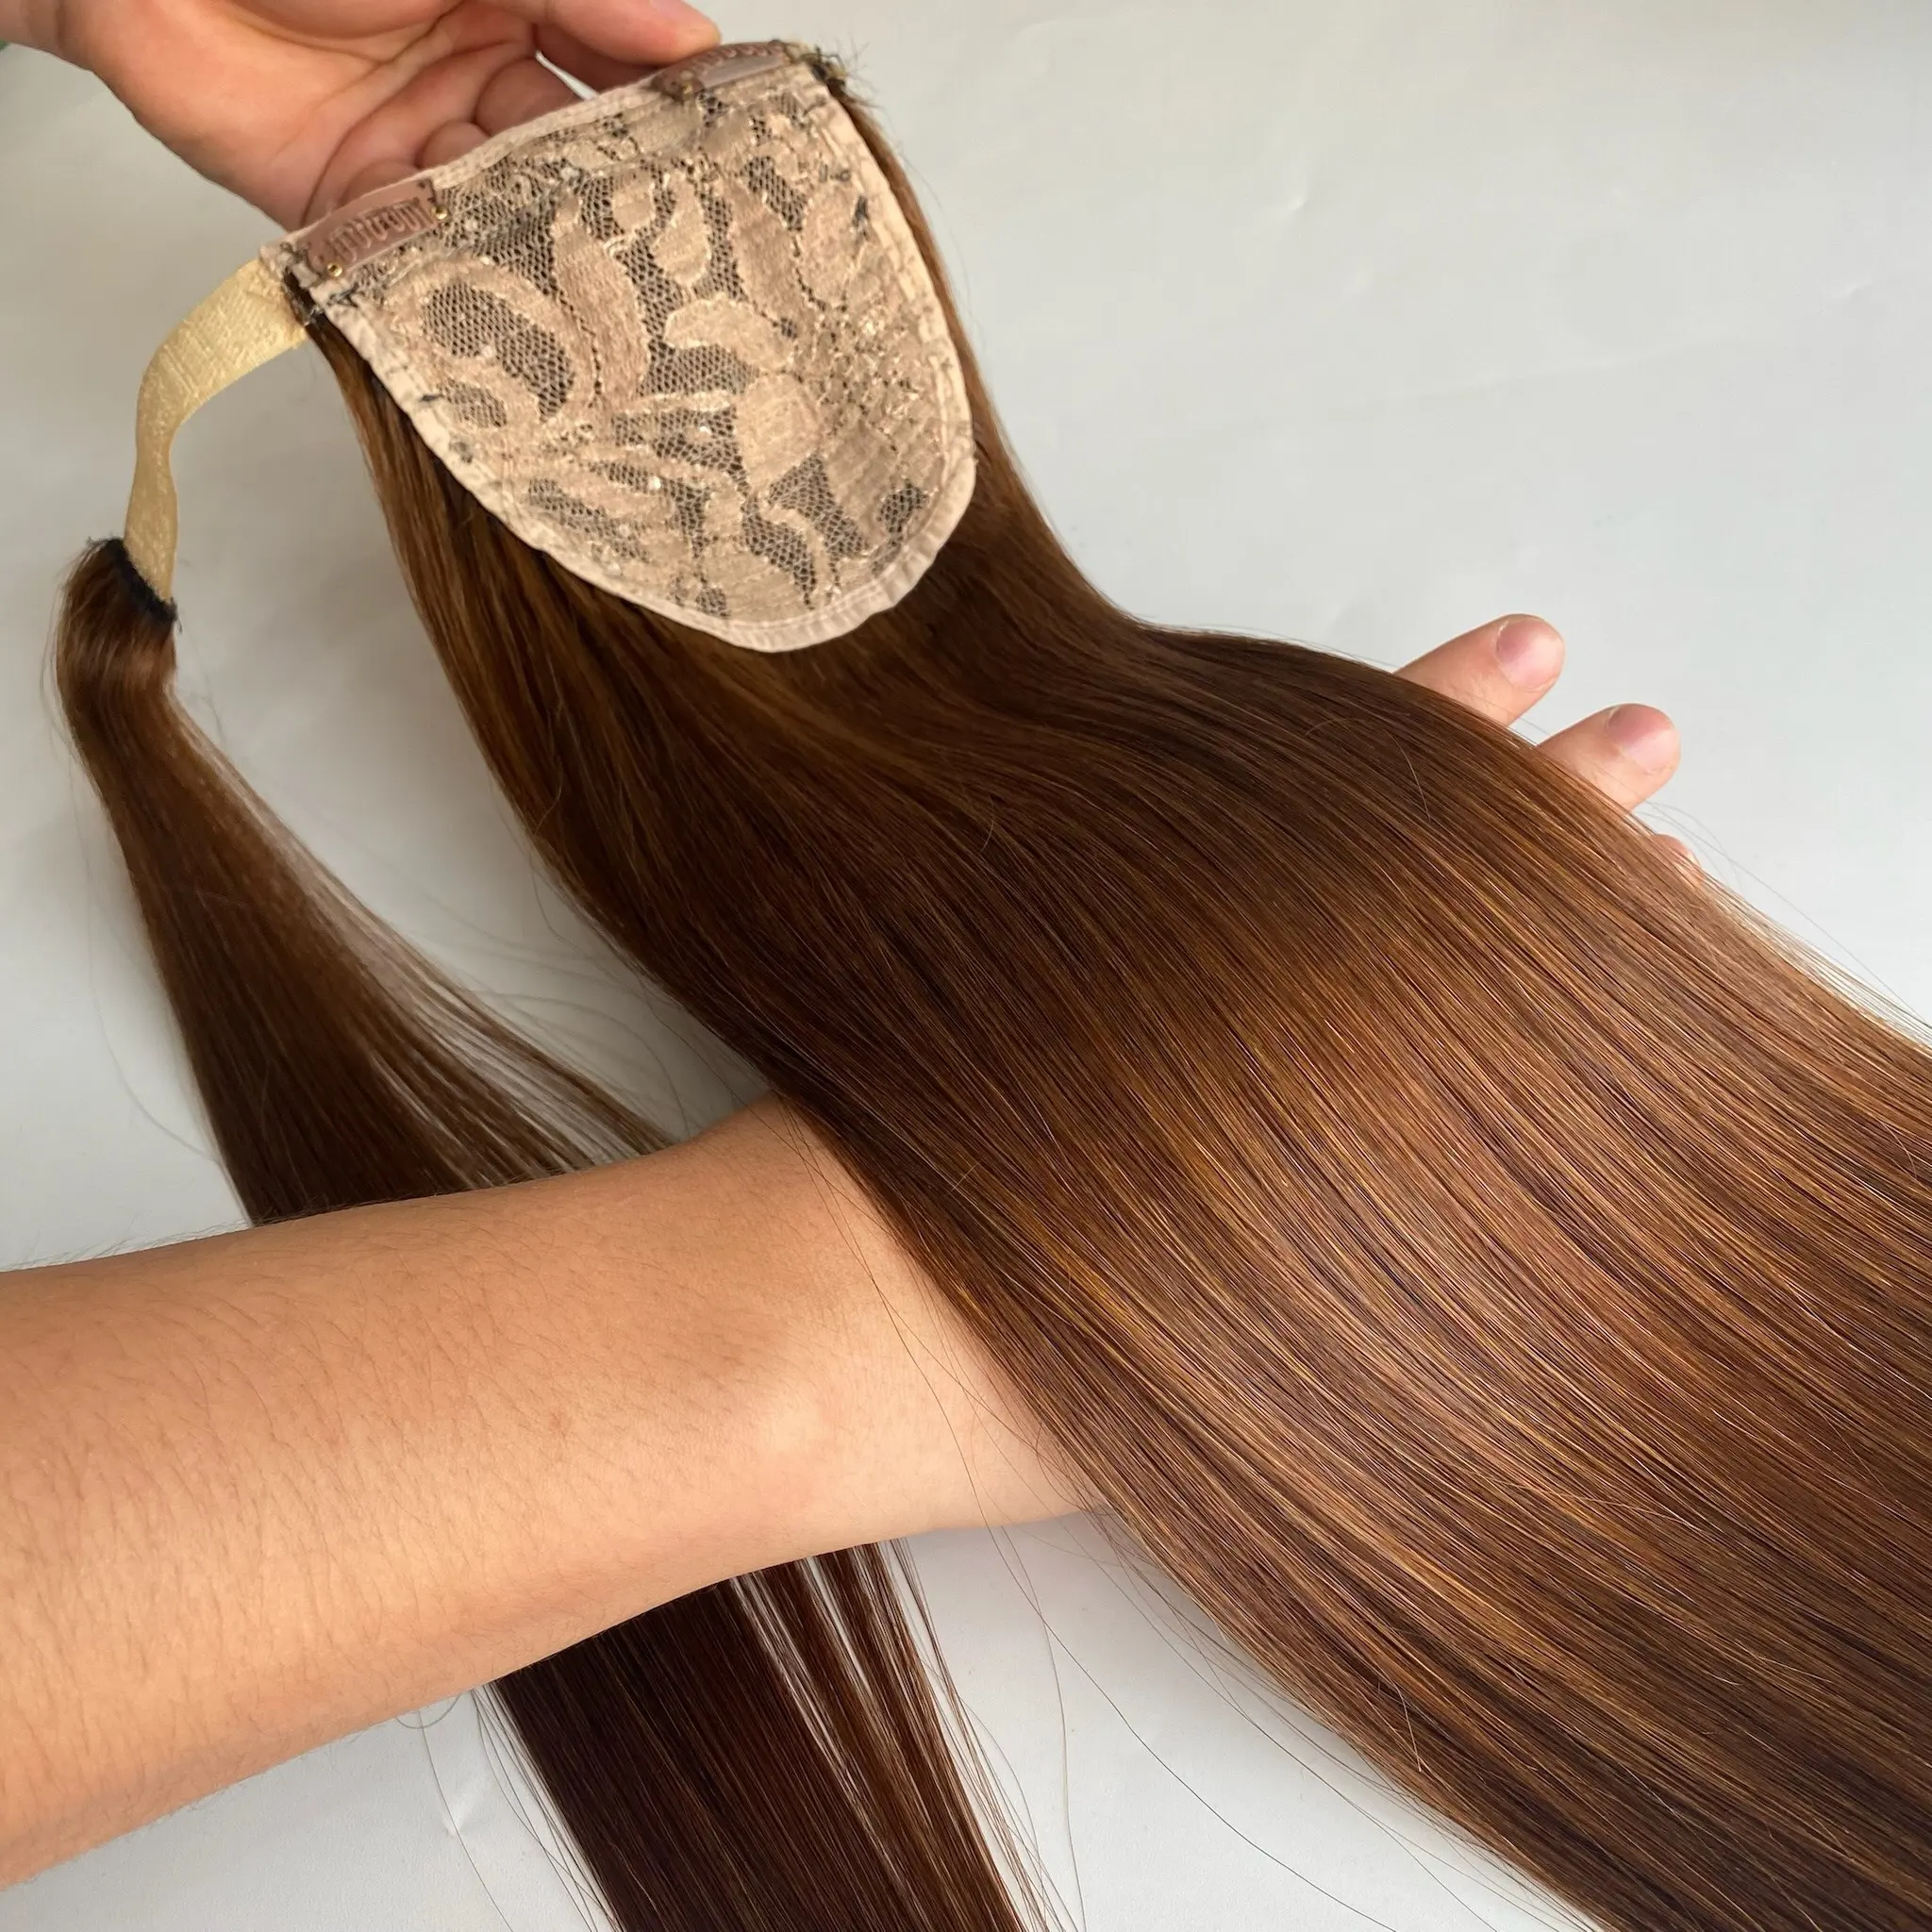 Премиум Качество Оптовая Цена Дешевые 100% натуральные волосы наращивание конский хвост в волосы девственные волосы